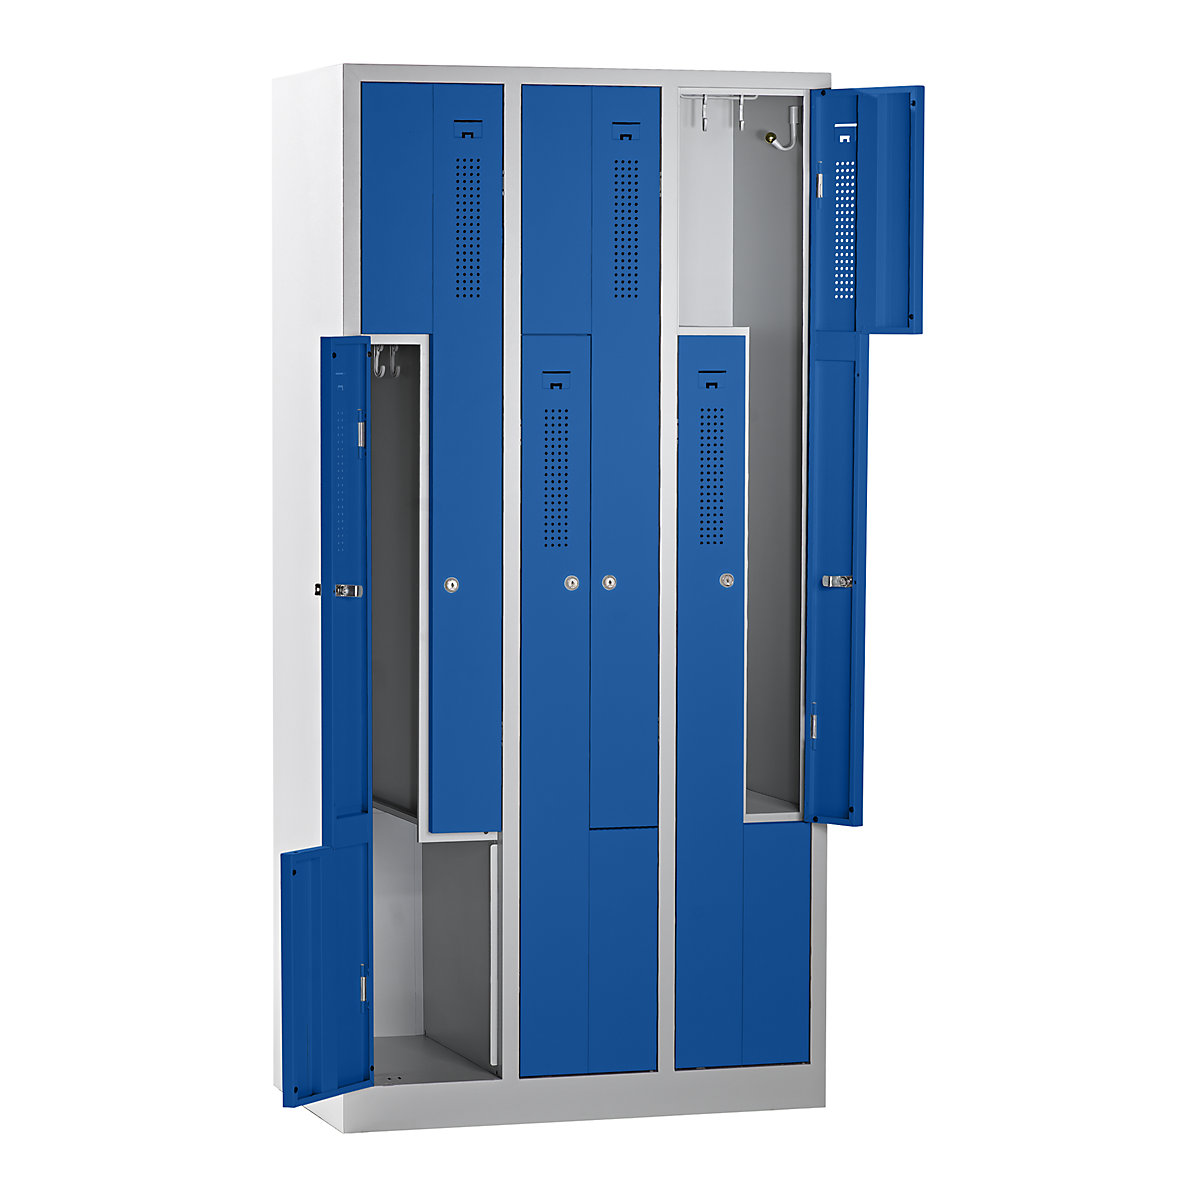 EUROKRAFTbasic – Z-öltözőszekrény, szélesség 870 mm, 3 rekesz, 6 ajtó, ajtó színe enciánkék, váz színe világosszürke